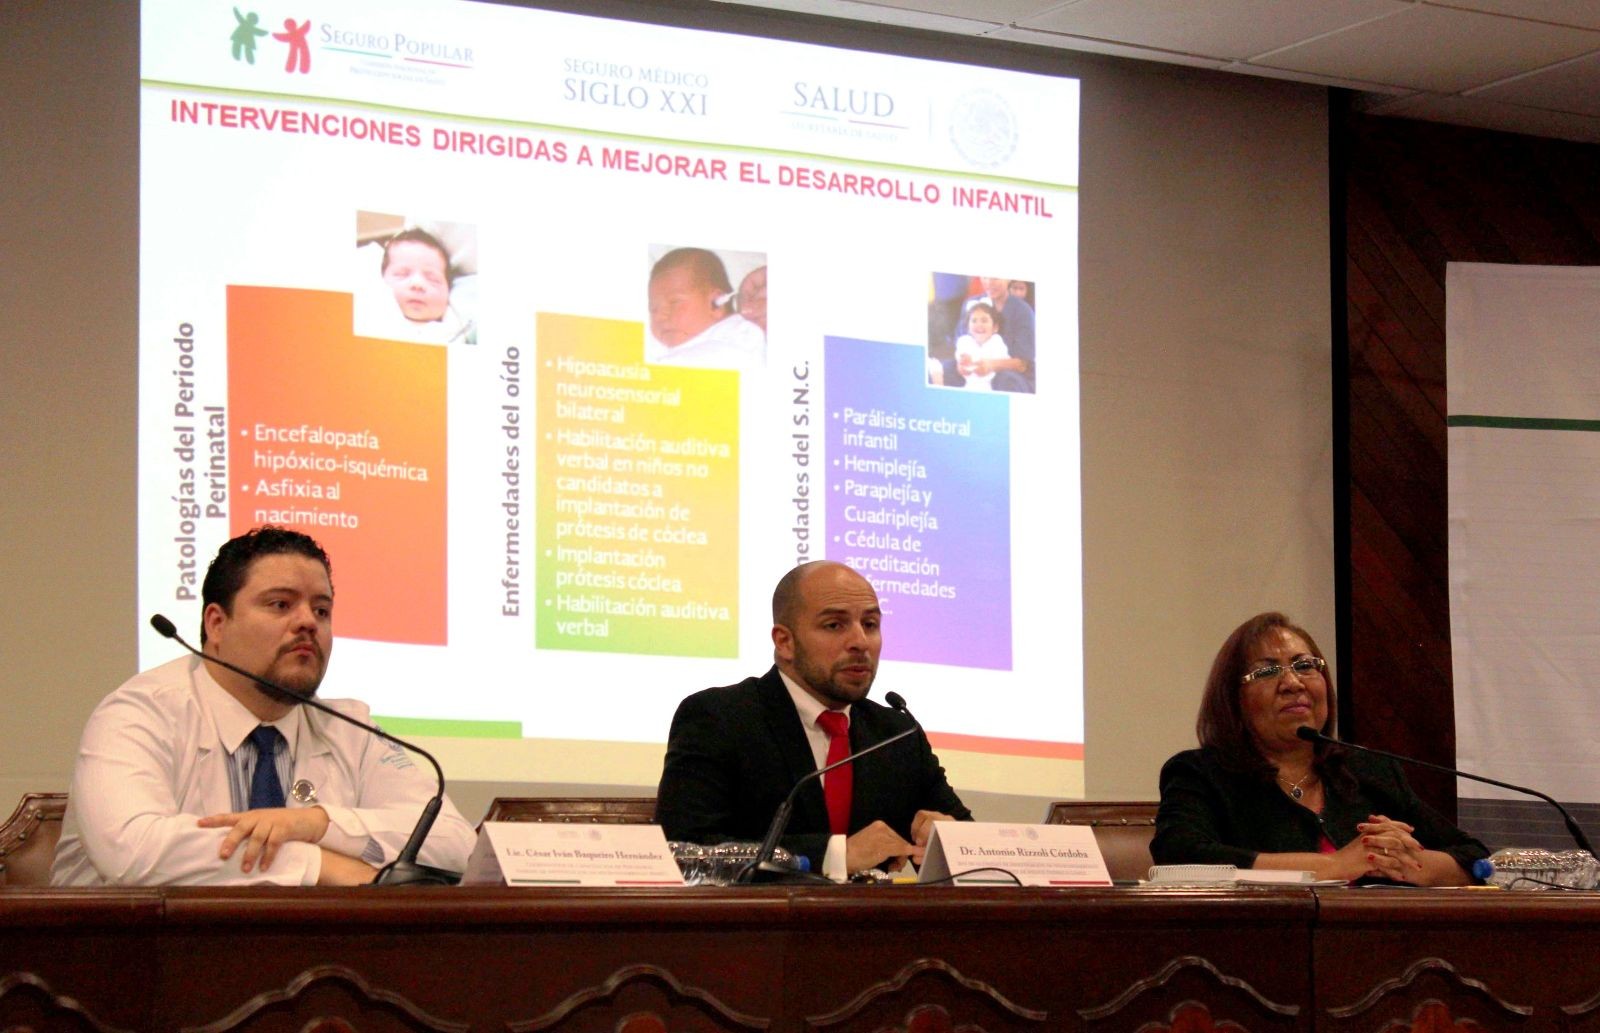 De izquierda a derecha César Iván Baqueiro Hernández, Antonio Rizzoli Córdova y Elizabeth Halley Castillo